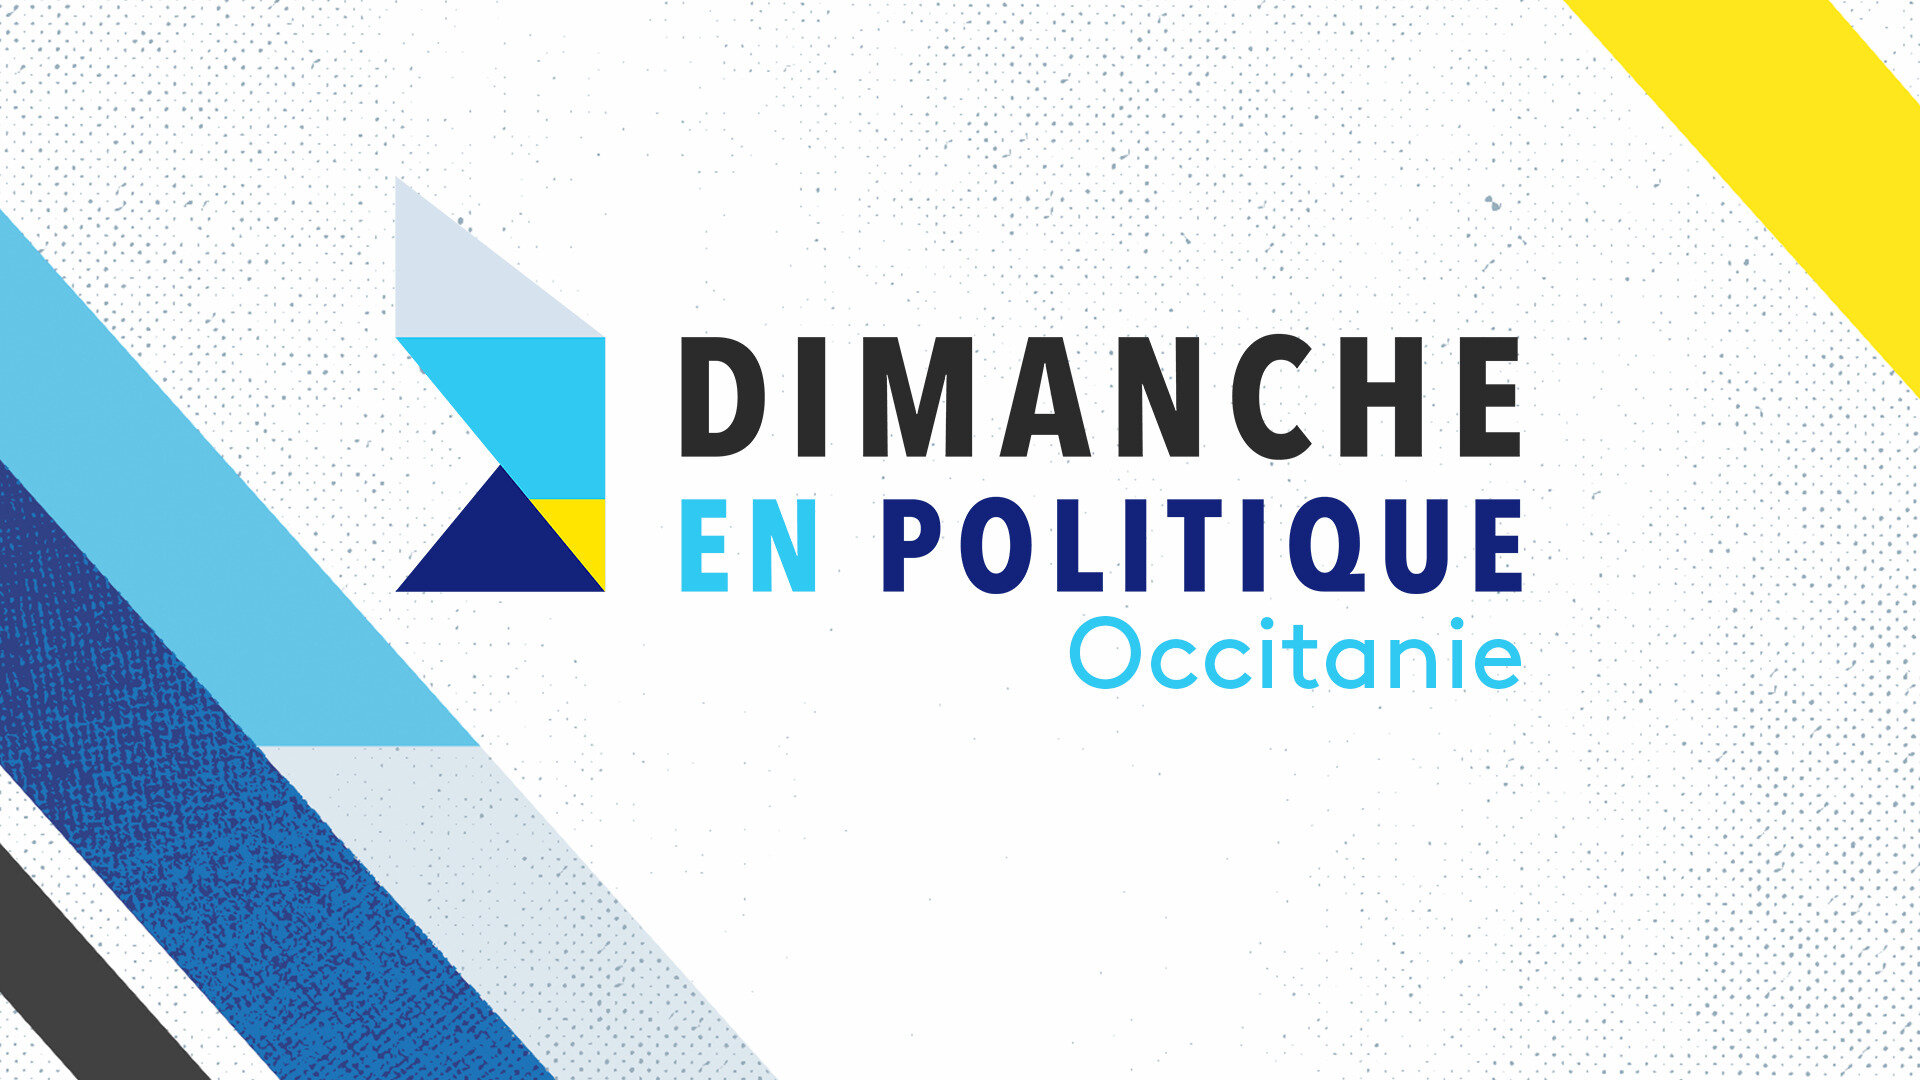 Dimanche en politique - Occitanie : Le télétravail va-t-il révolutionner nos emplois ?